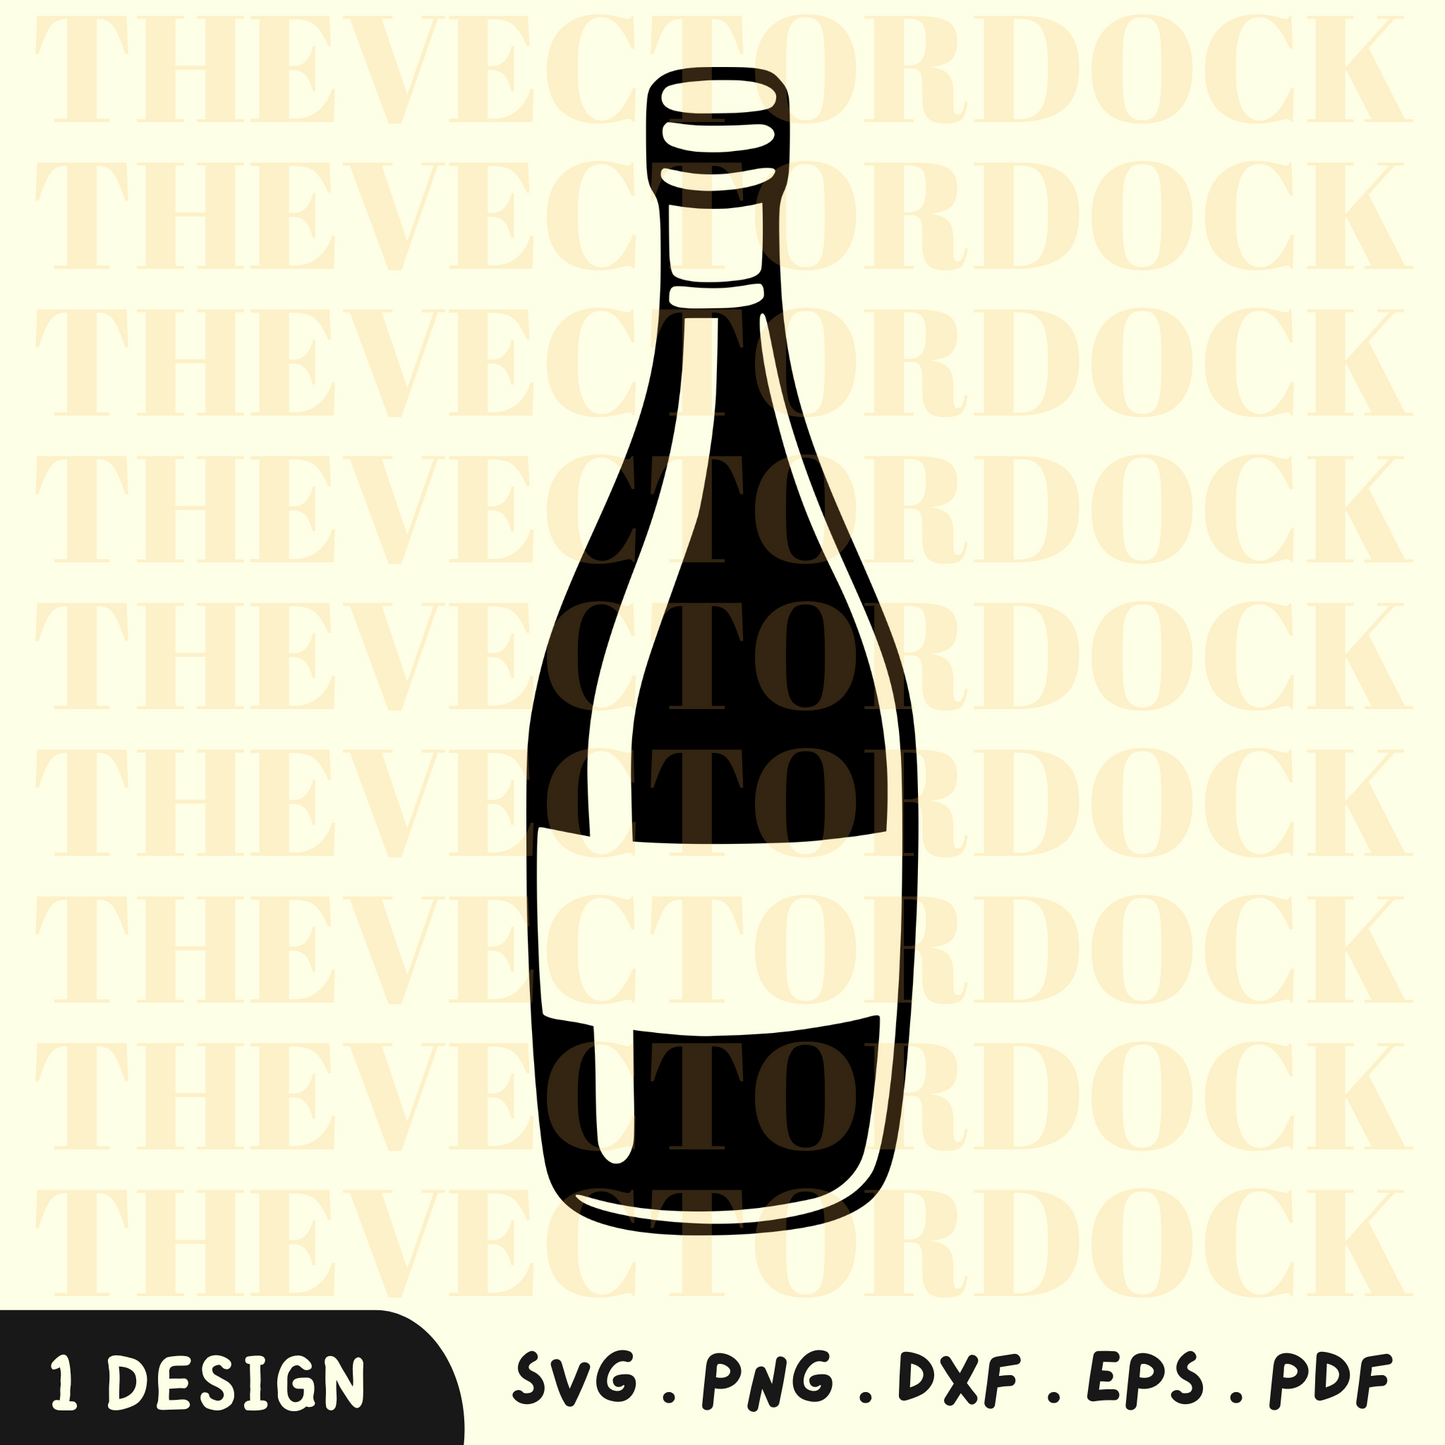 Wine Bottle SVG Design, Wine Bottle SVG, Wine Bottle Silhouette, Wine, Wine Bottle Art, Wine Bottle Vector